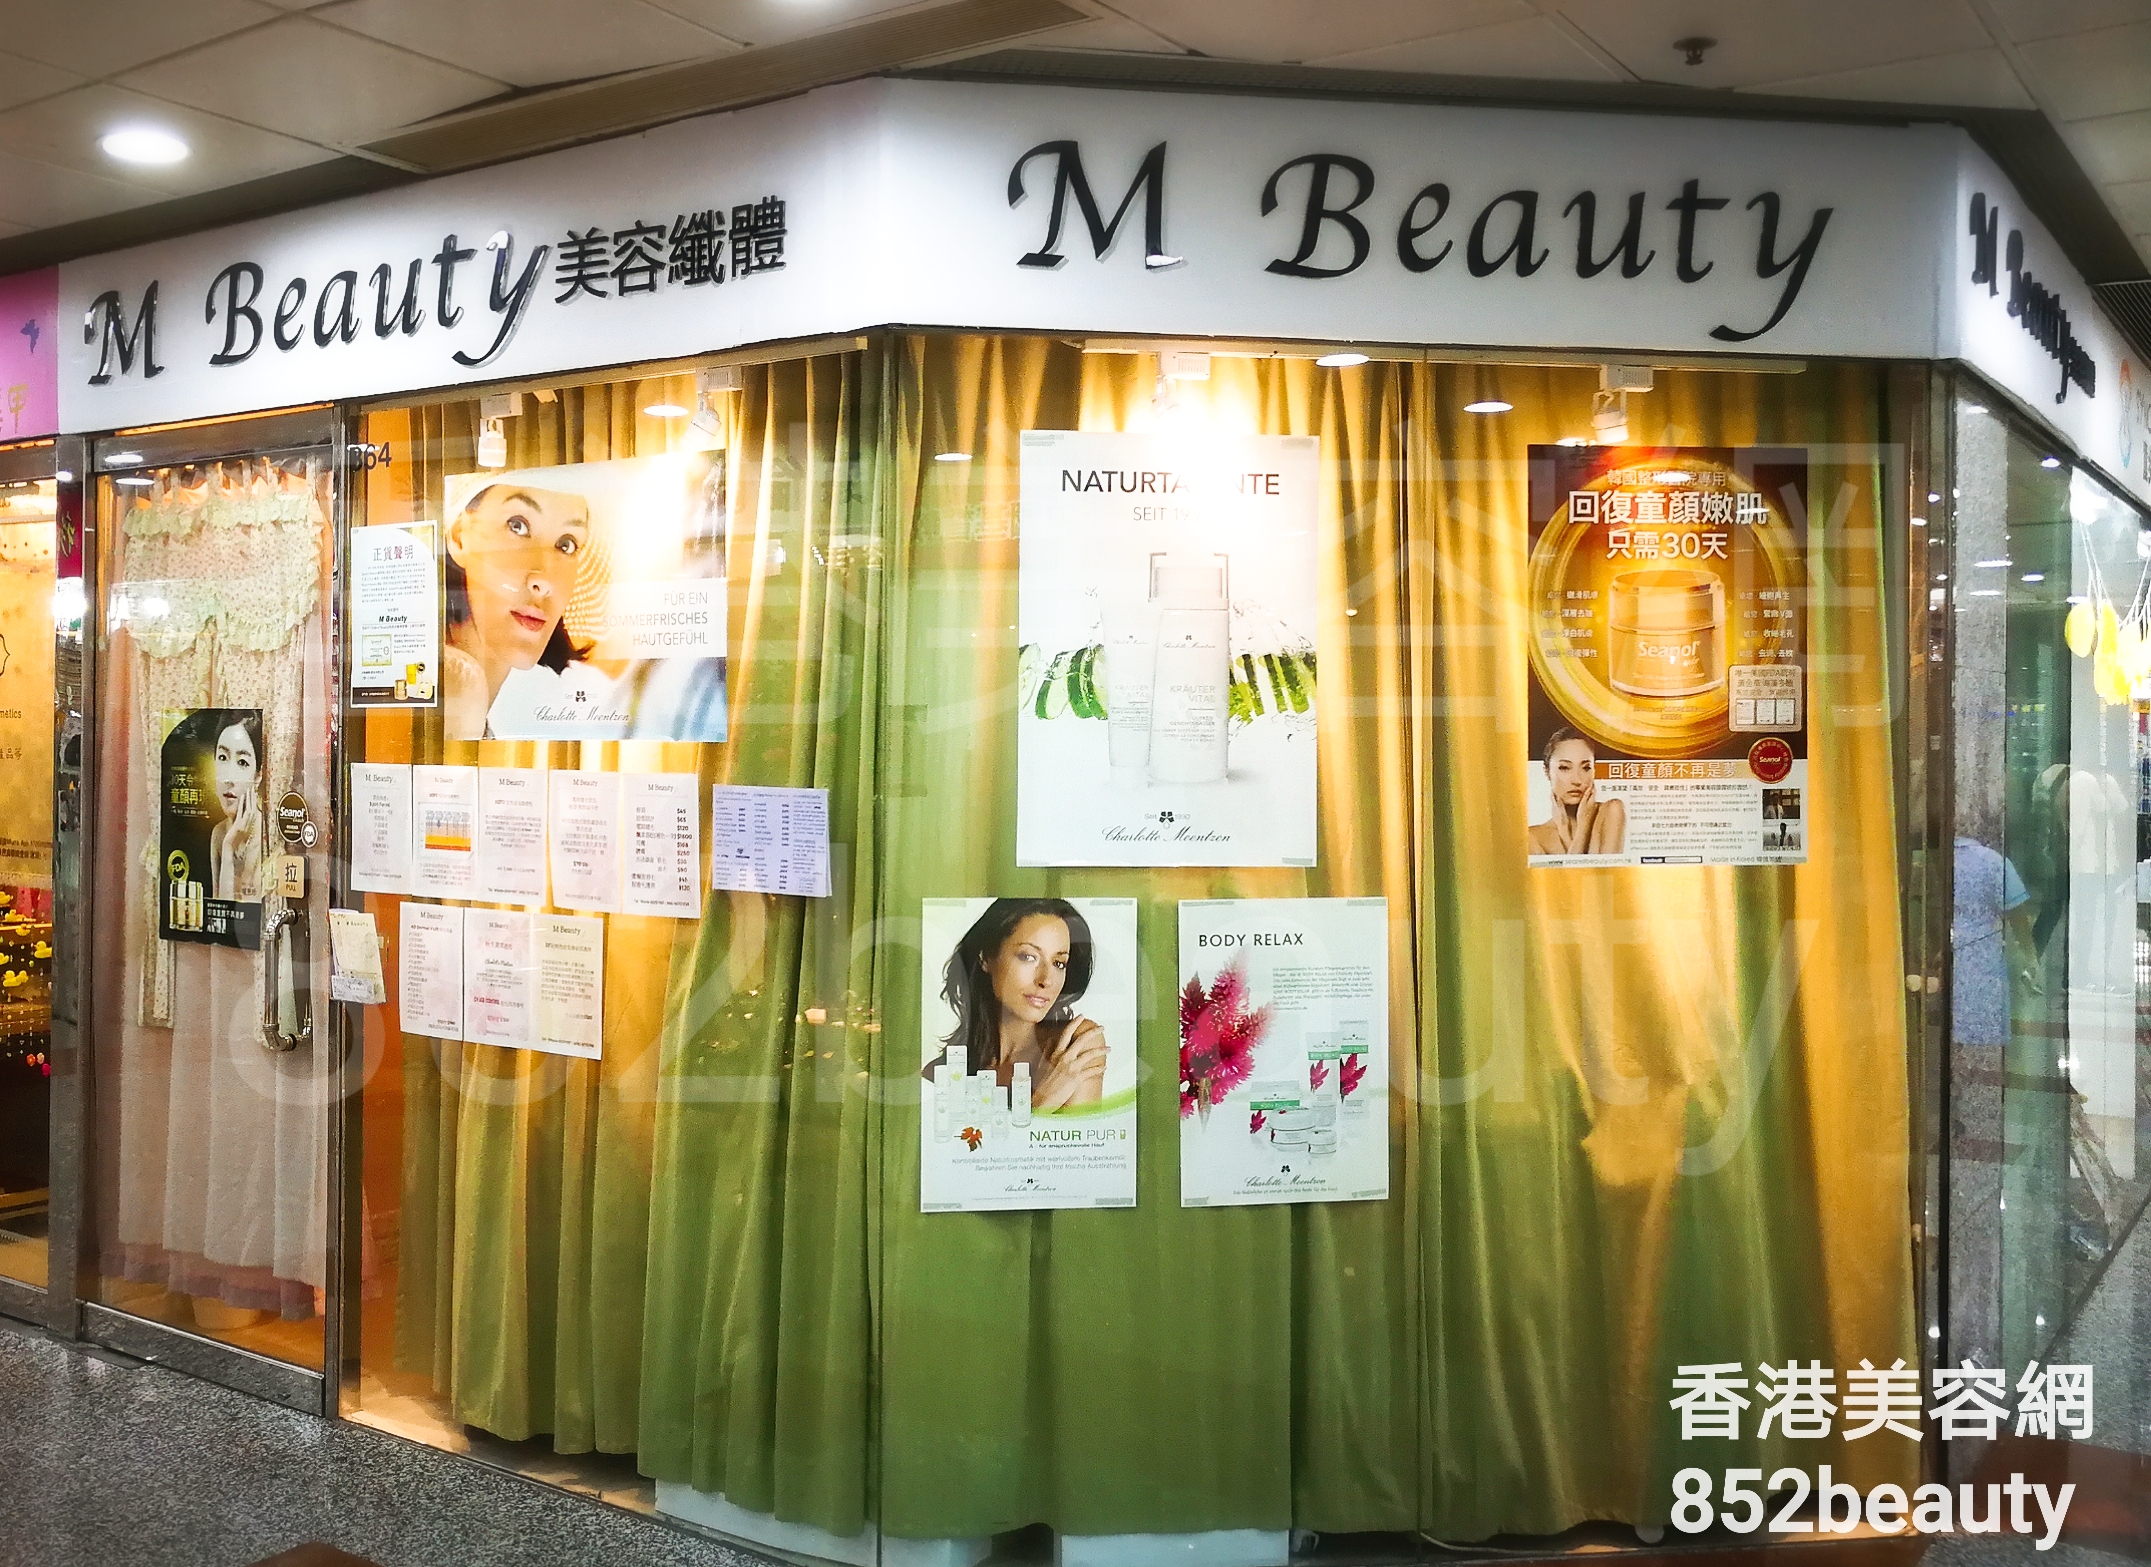 香港美容網 Hong Kong Beauty Salon 美容院 / 美容師: M Beauty